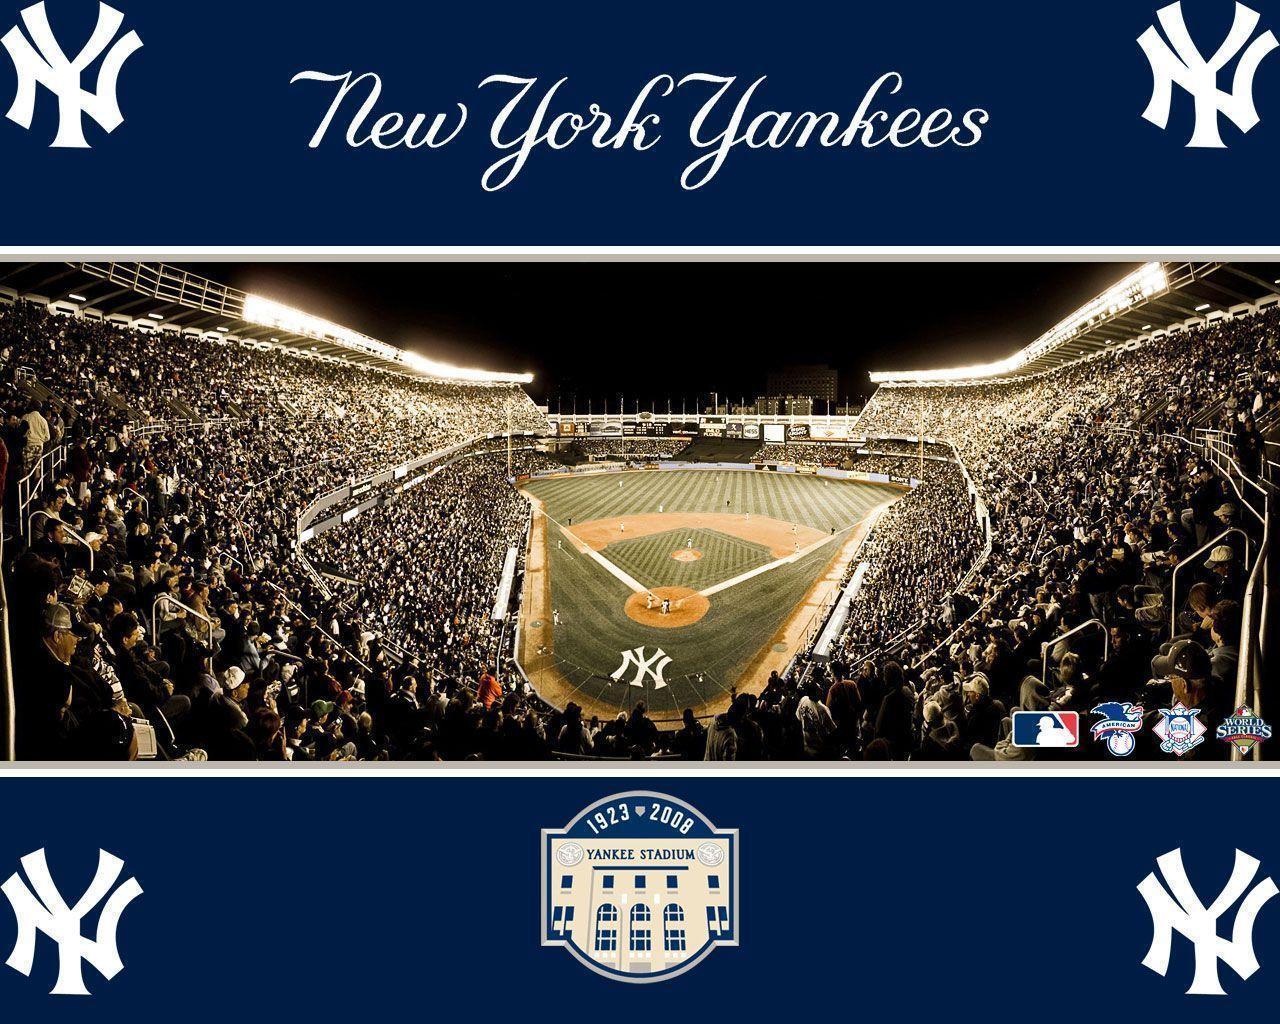 New York Yankees 2012 Schedule Wallpaper